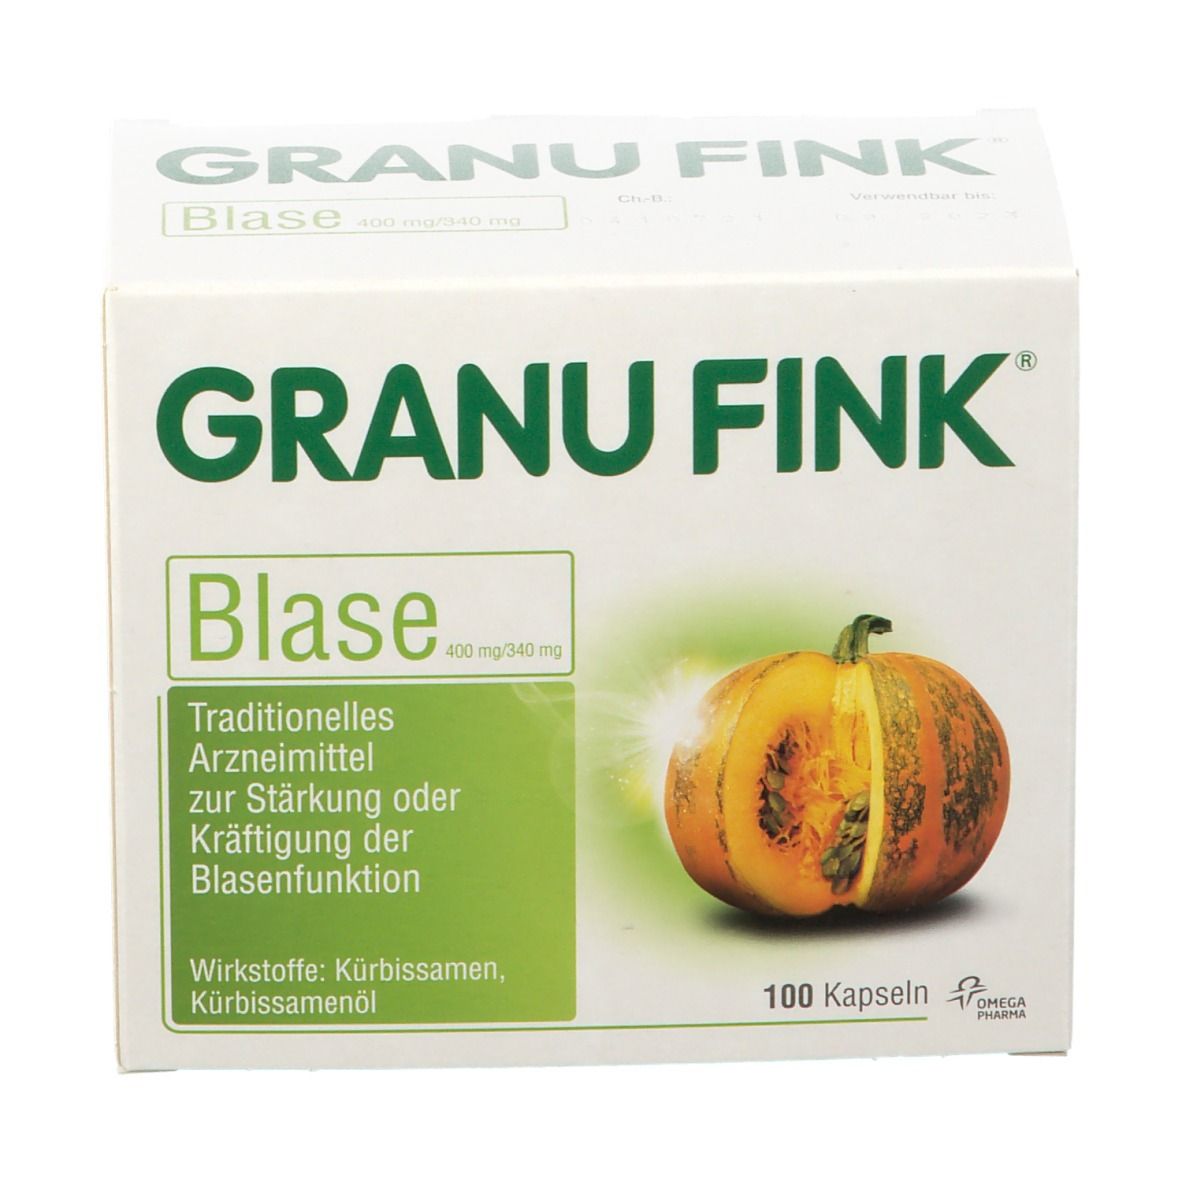 GRANU FINK® BLASE